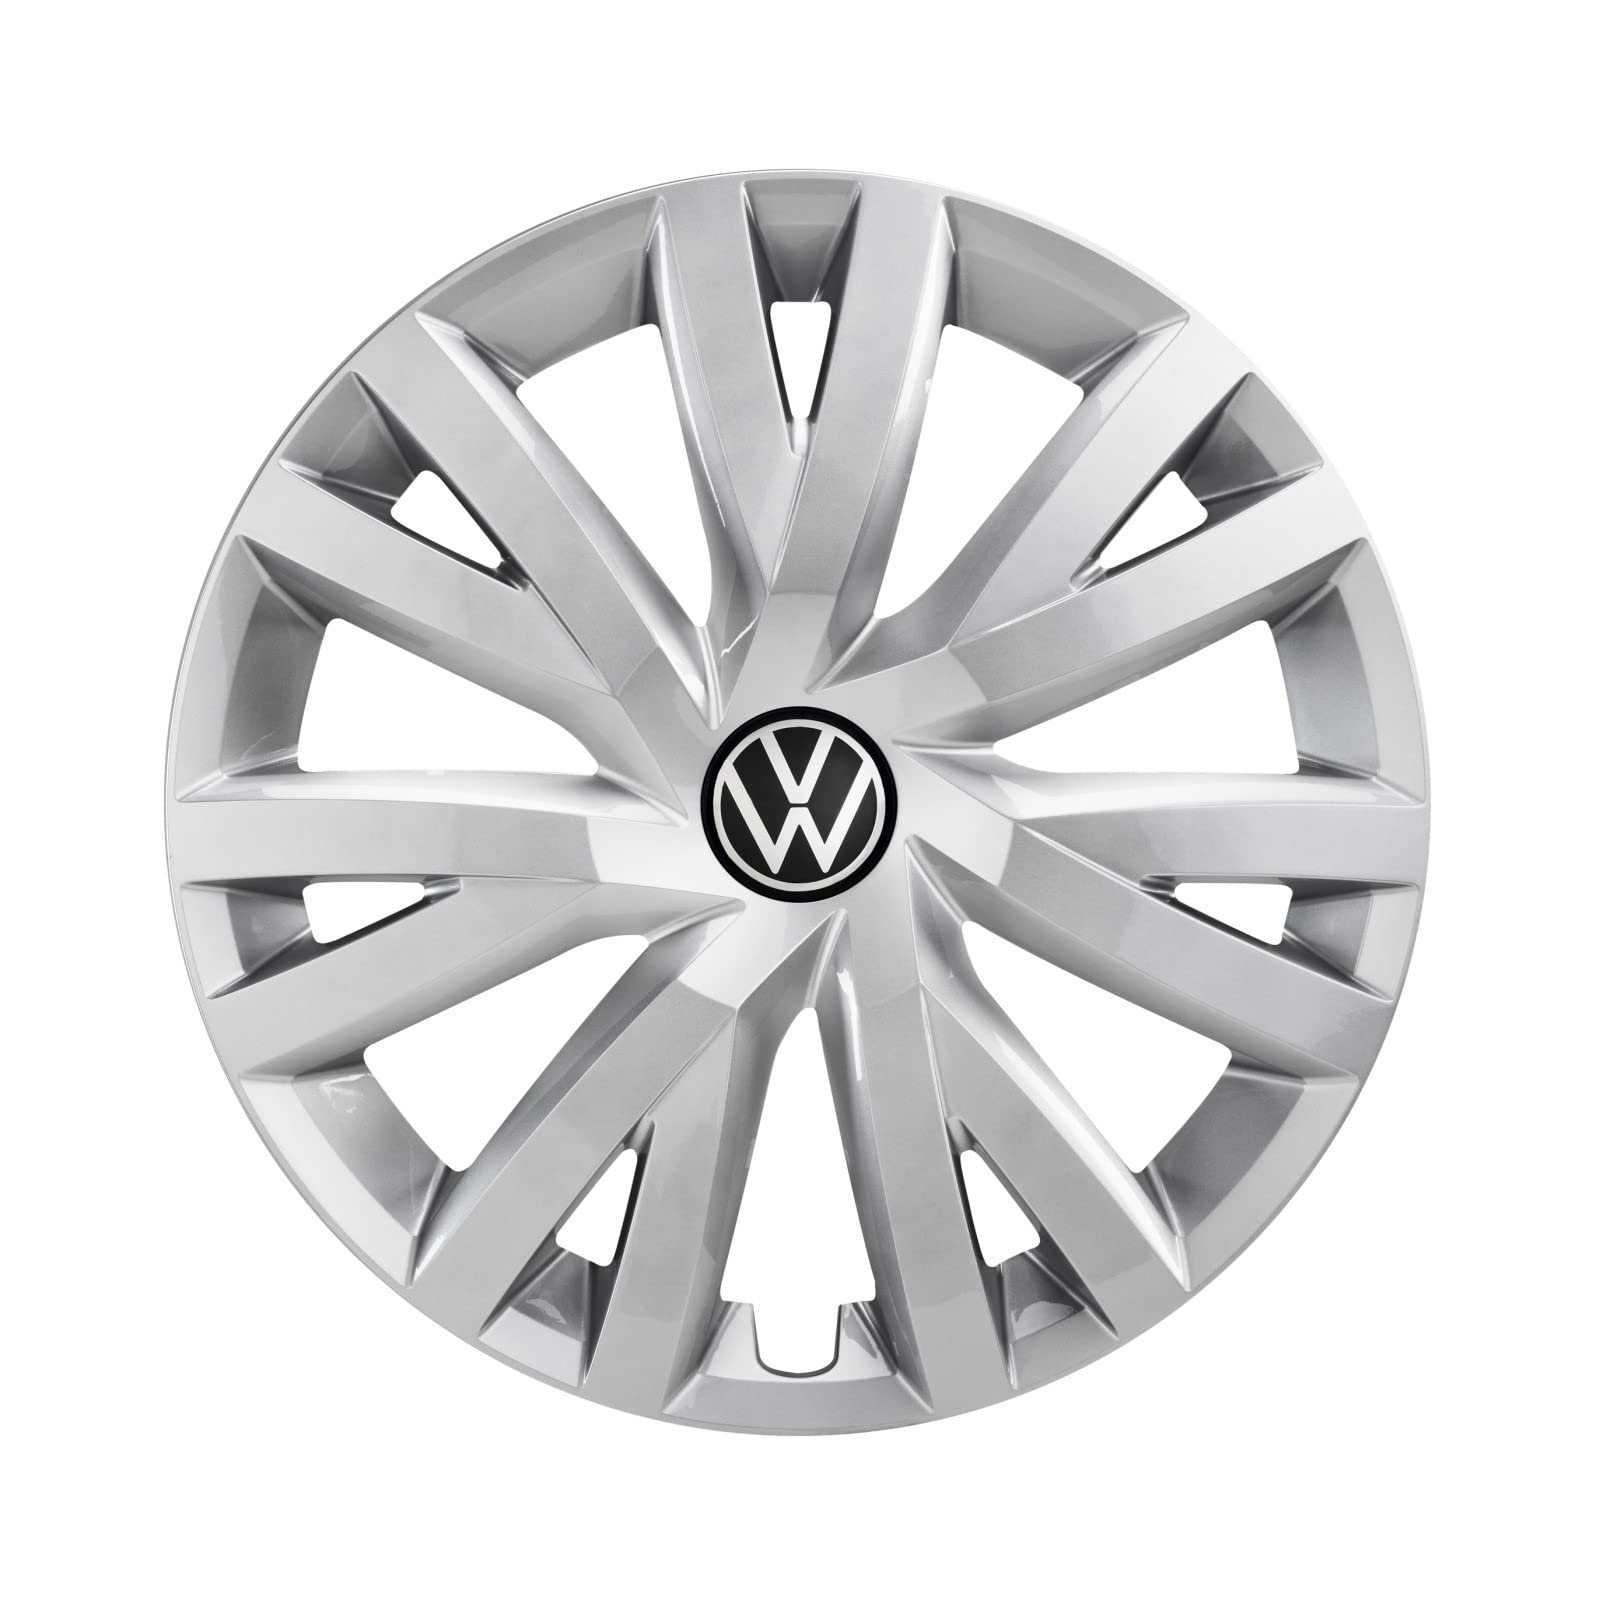 Volkswagen 5H0071456UWP Radkappen (4 Stück) Radzierblenden 16 Zoll Stahlfelgen Radblenden, brillantsilber von Volkswagen